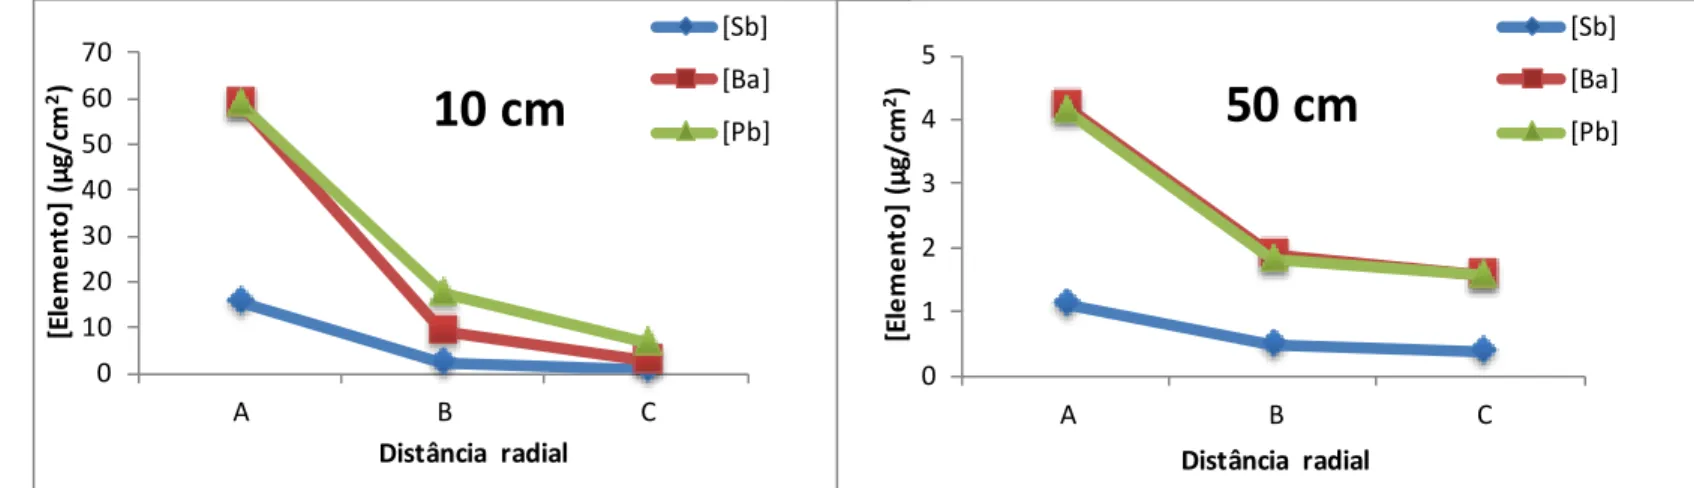 Figura 7 - Concentração de Pb, Sb e Ba (µg/cm 2  de tecido alvo) nas 3 posições  radiais (A, B  e C) para as distâncias  de disparo de 10 cm e 50 cm